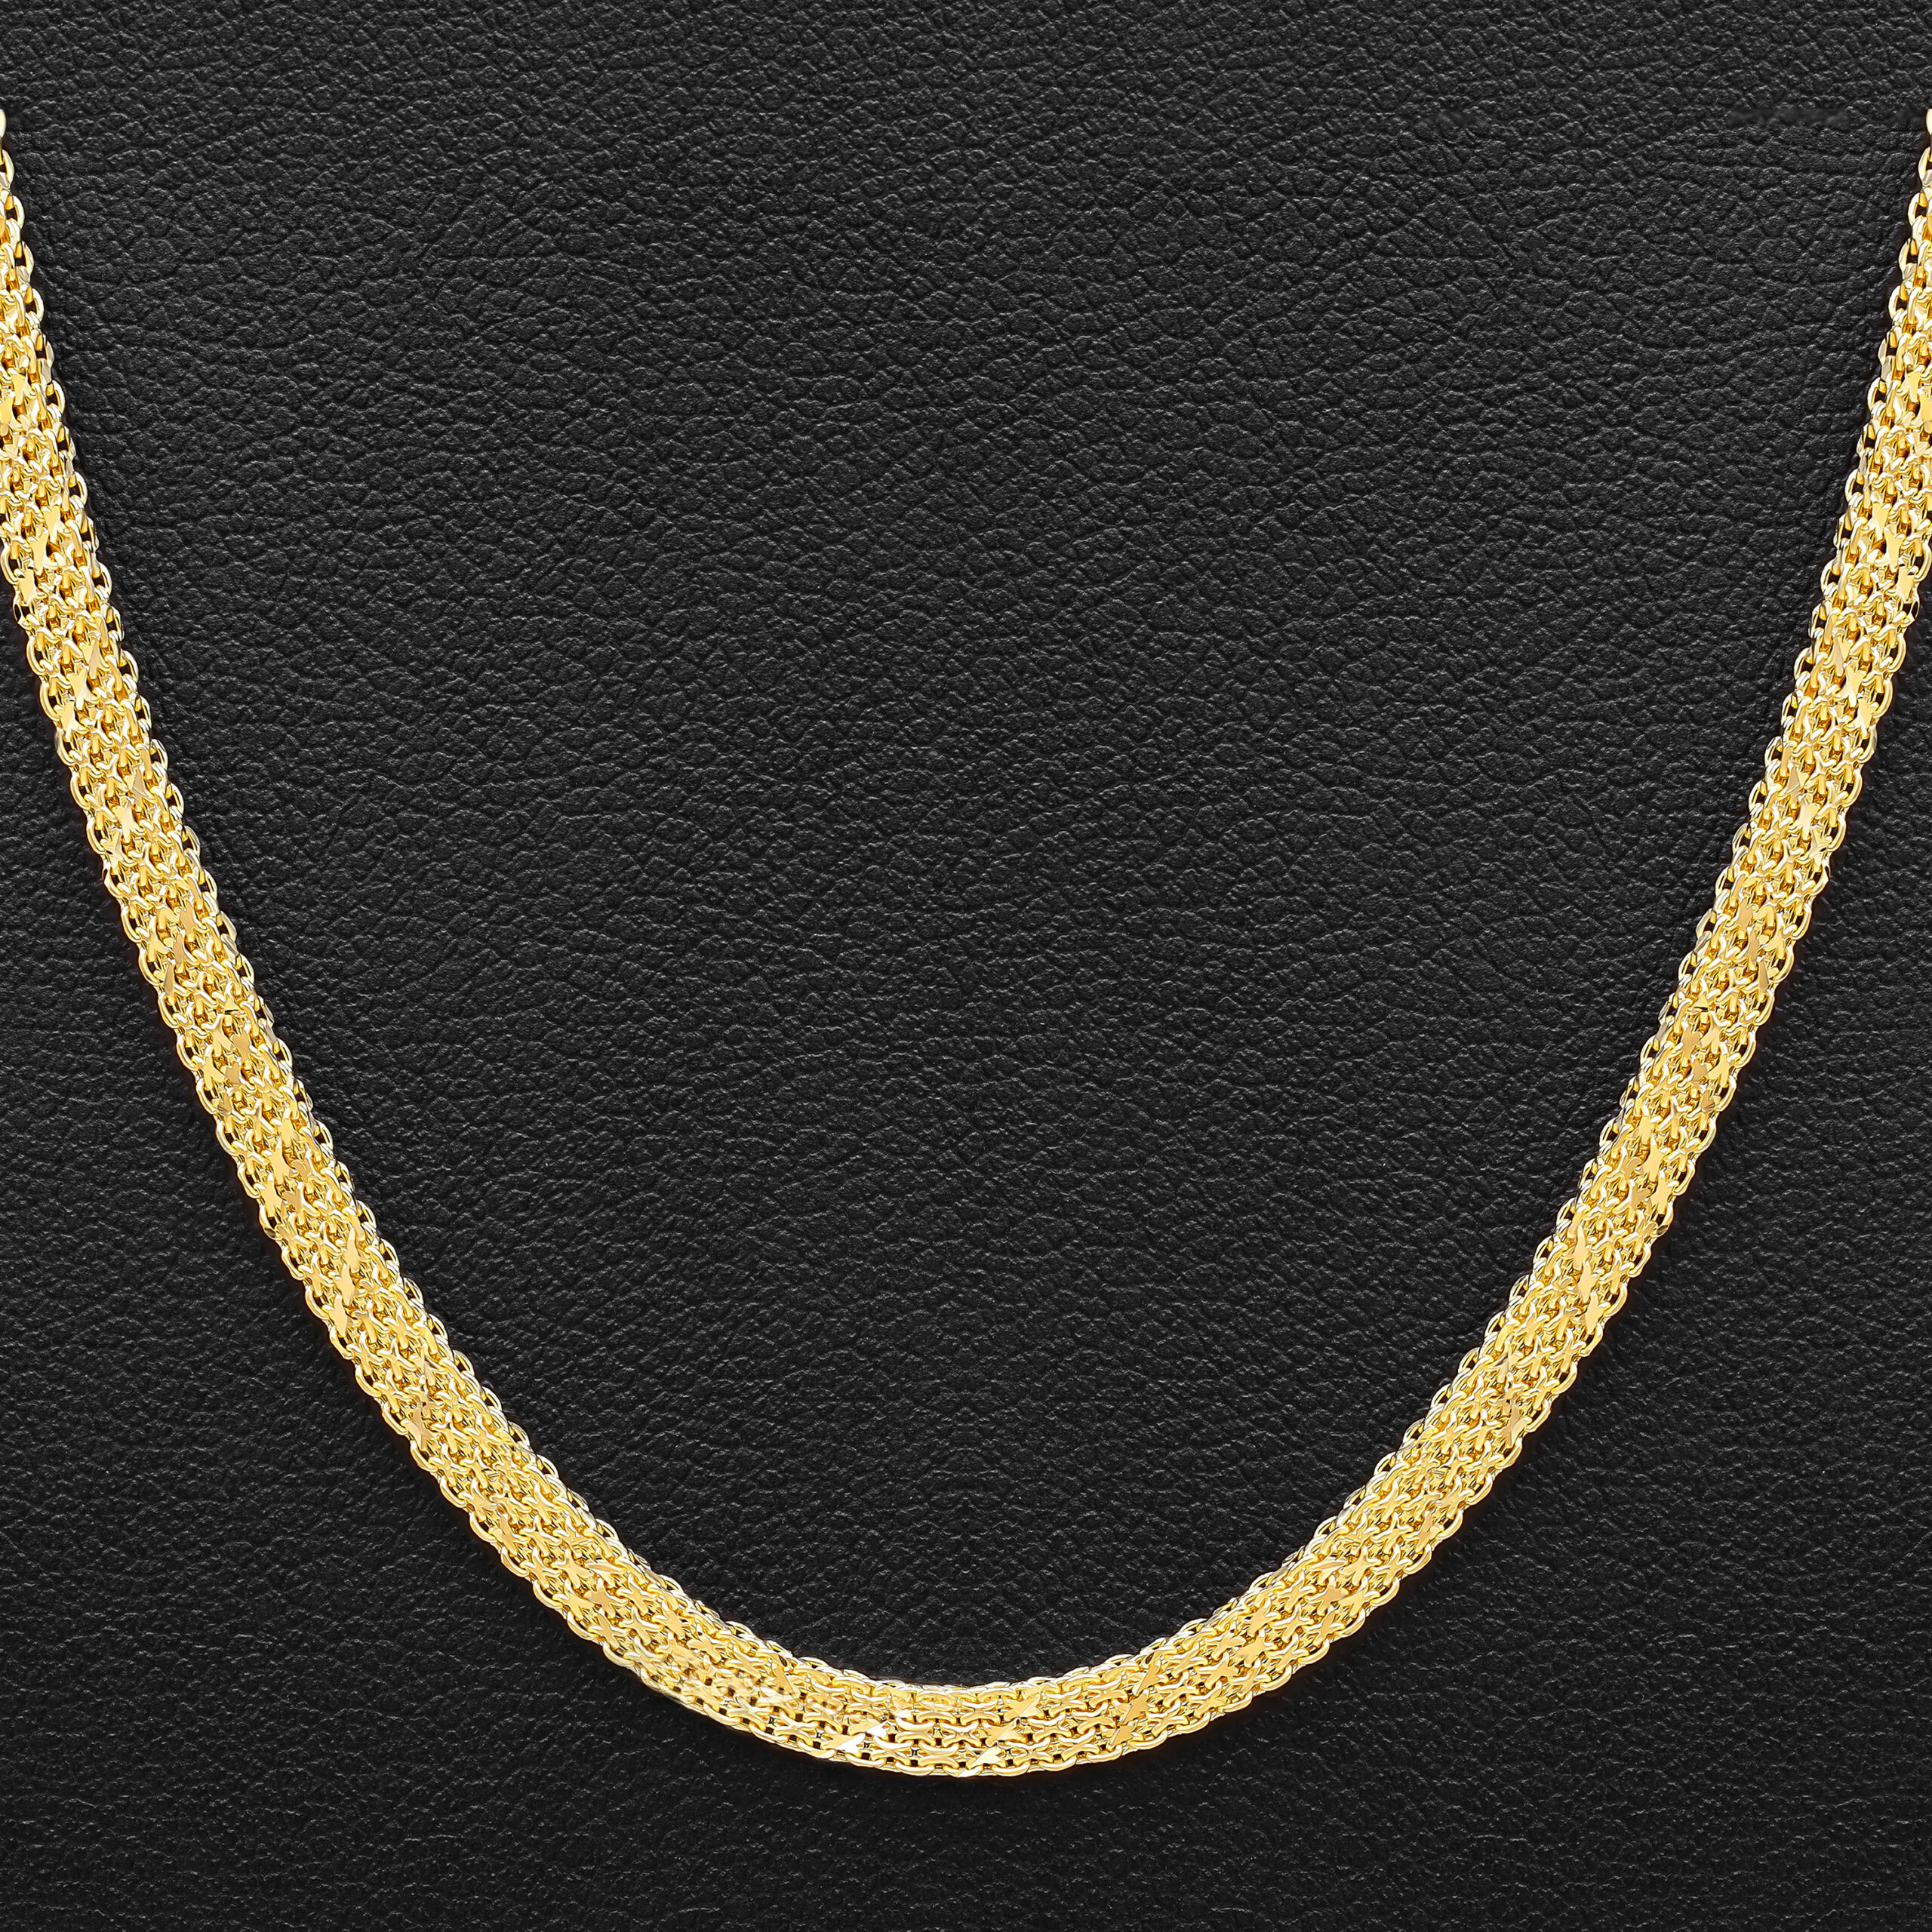 22K Gold Bismark Chain – 20 Inch